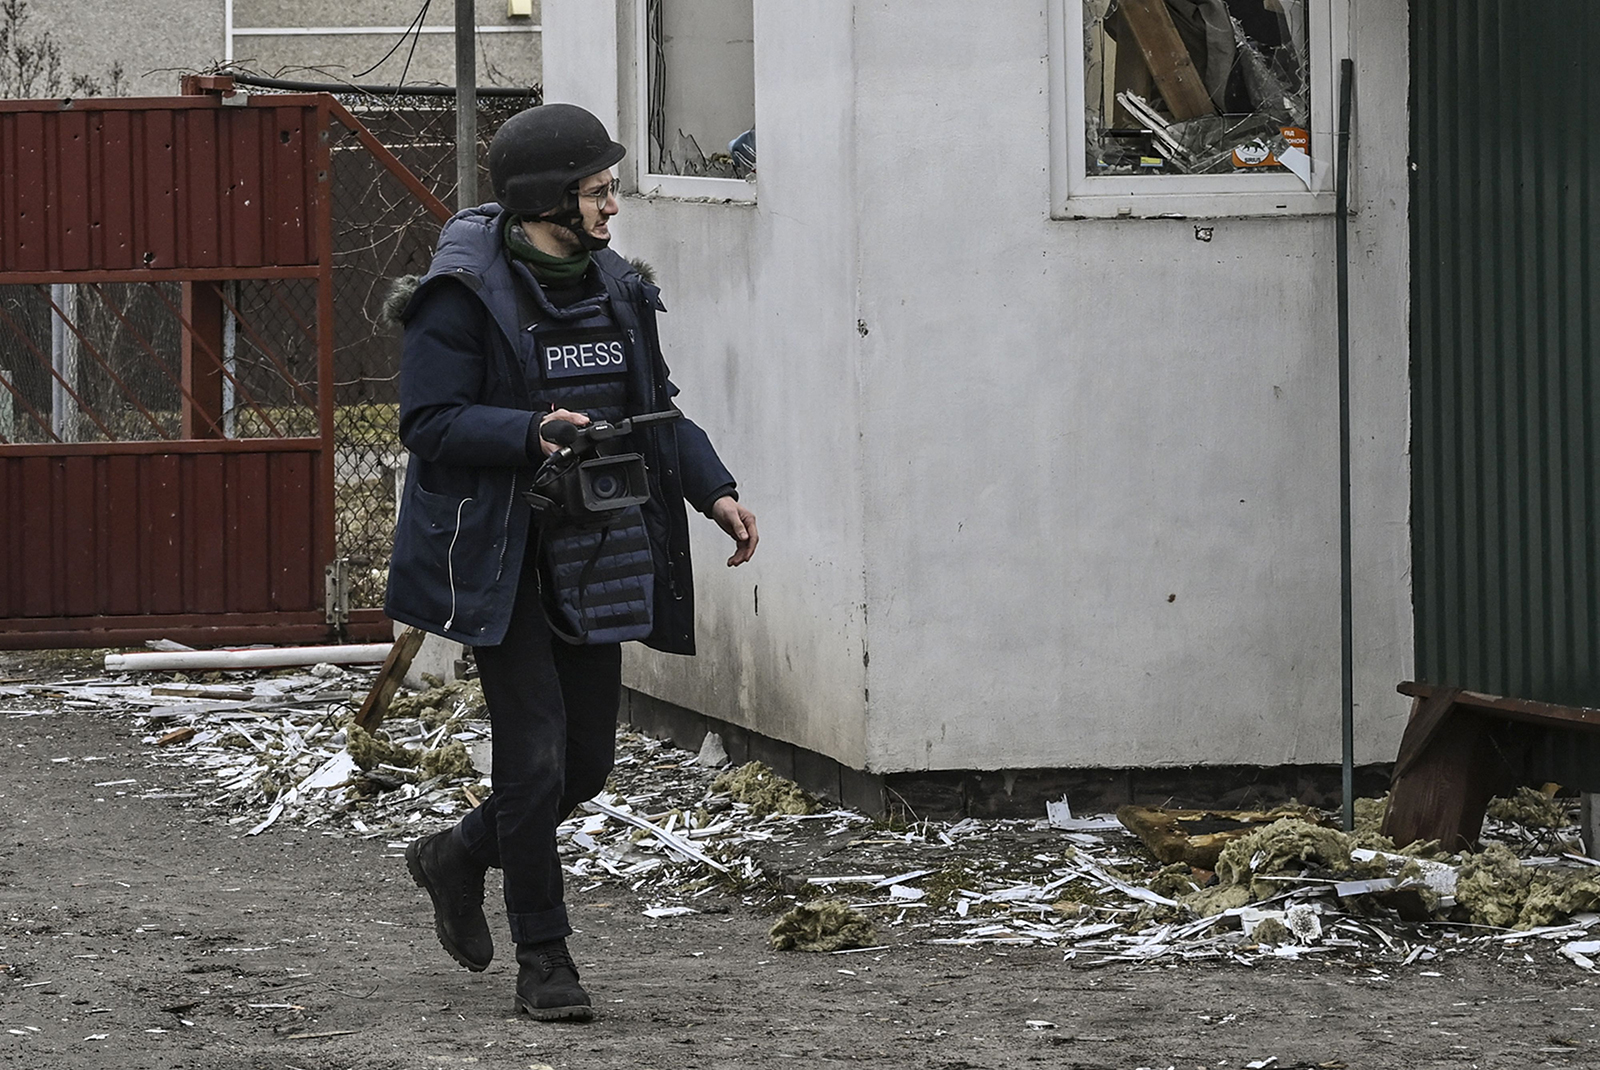 Arman Soldin camina por un pueblo después de un bombardeo en Ucrania el 3 de marzo de 2022.